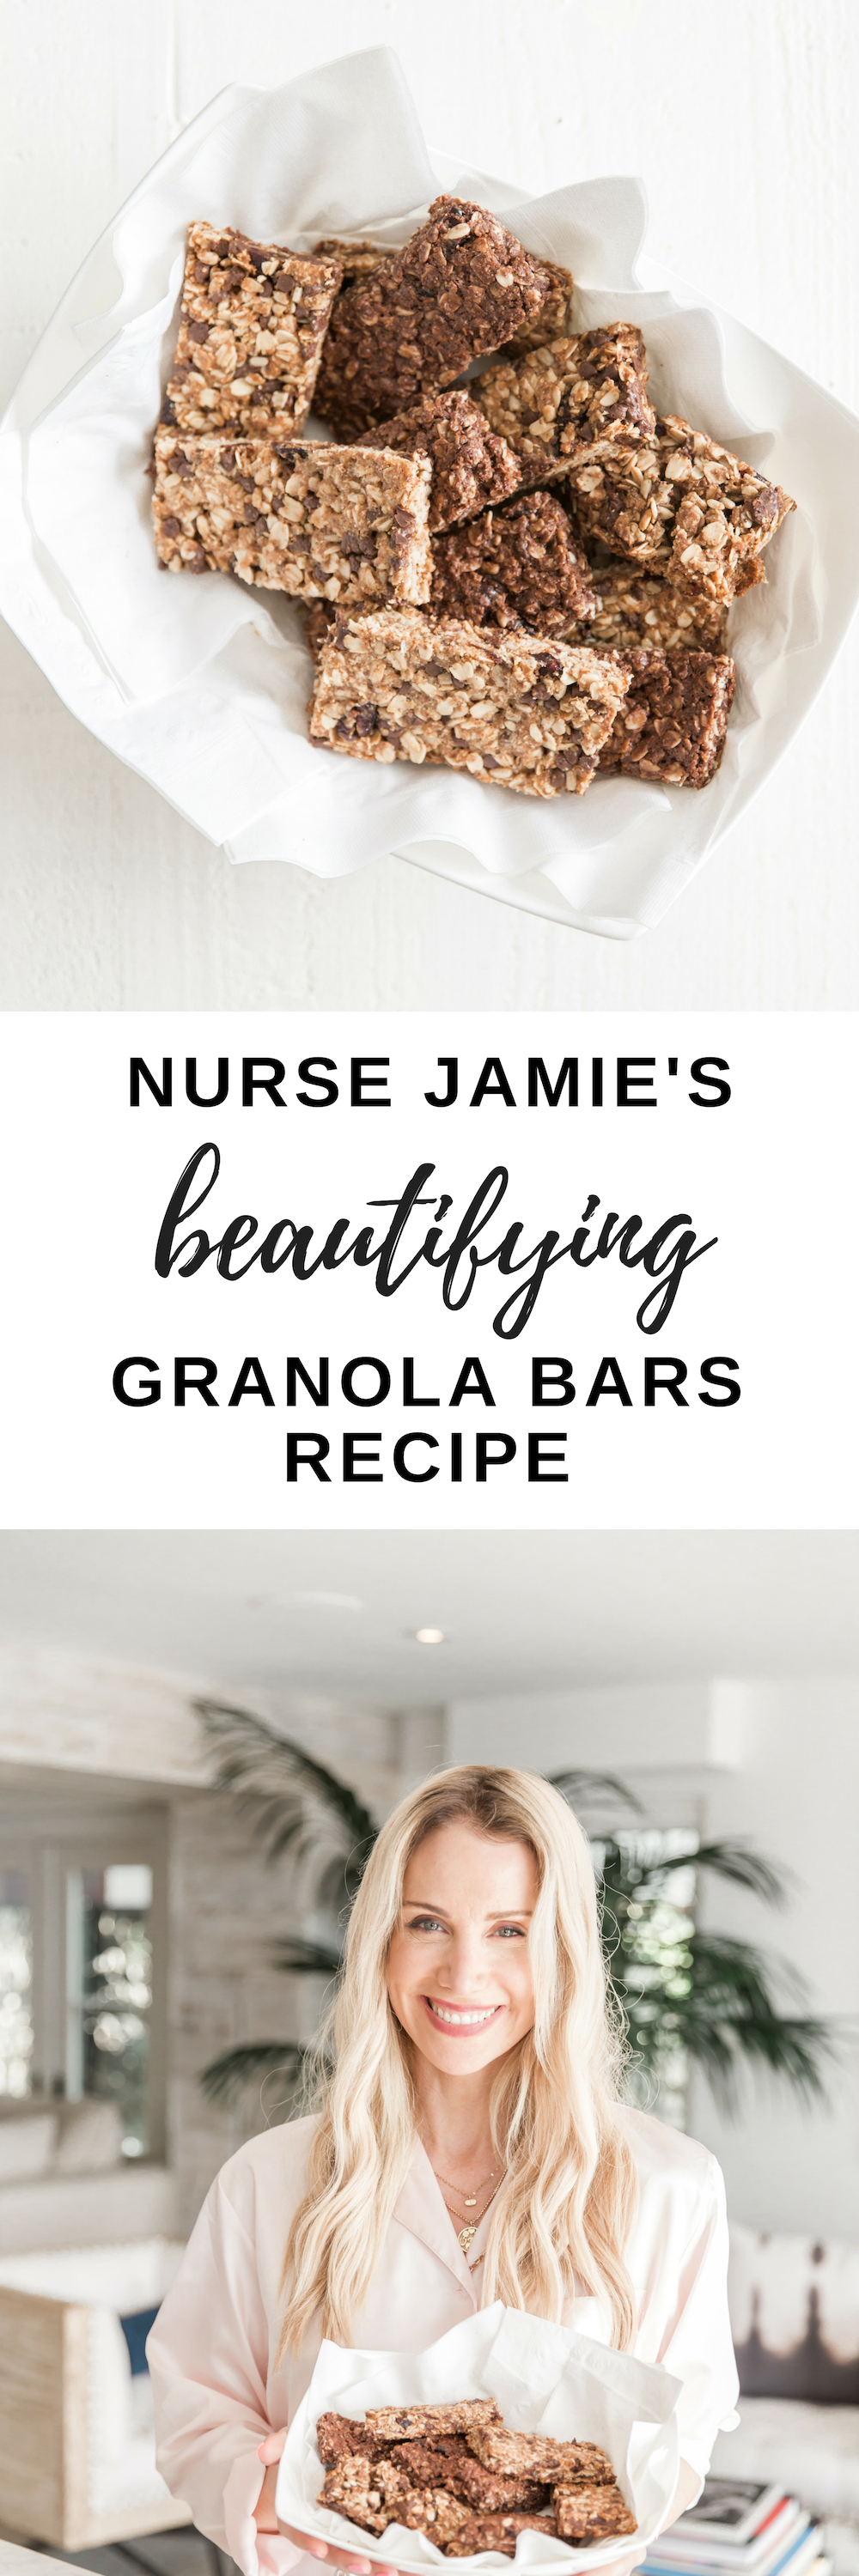 NURSE JAMIE'S Beautifying Granola Bars Recipe